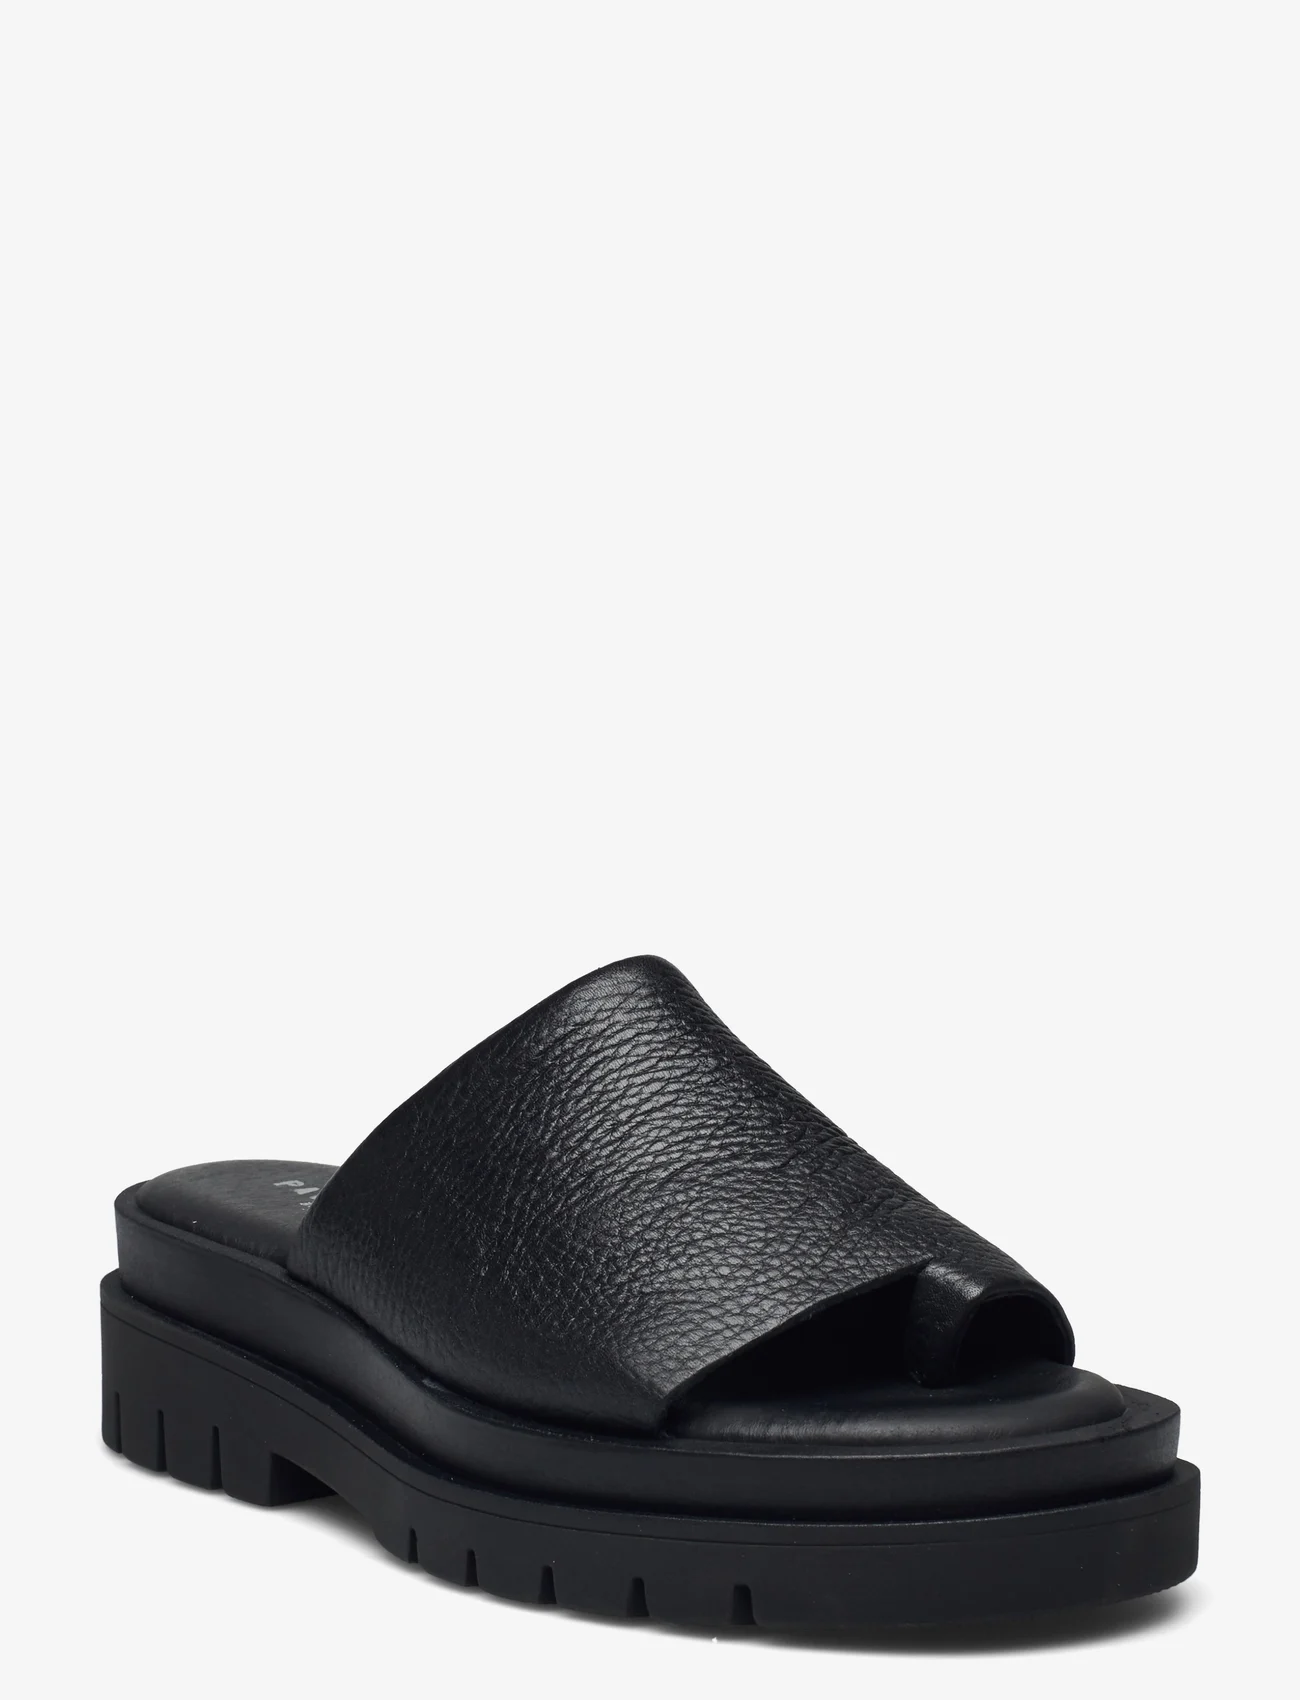 Pavement - Michelle - platform sandals - black - 0